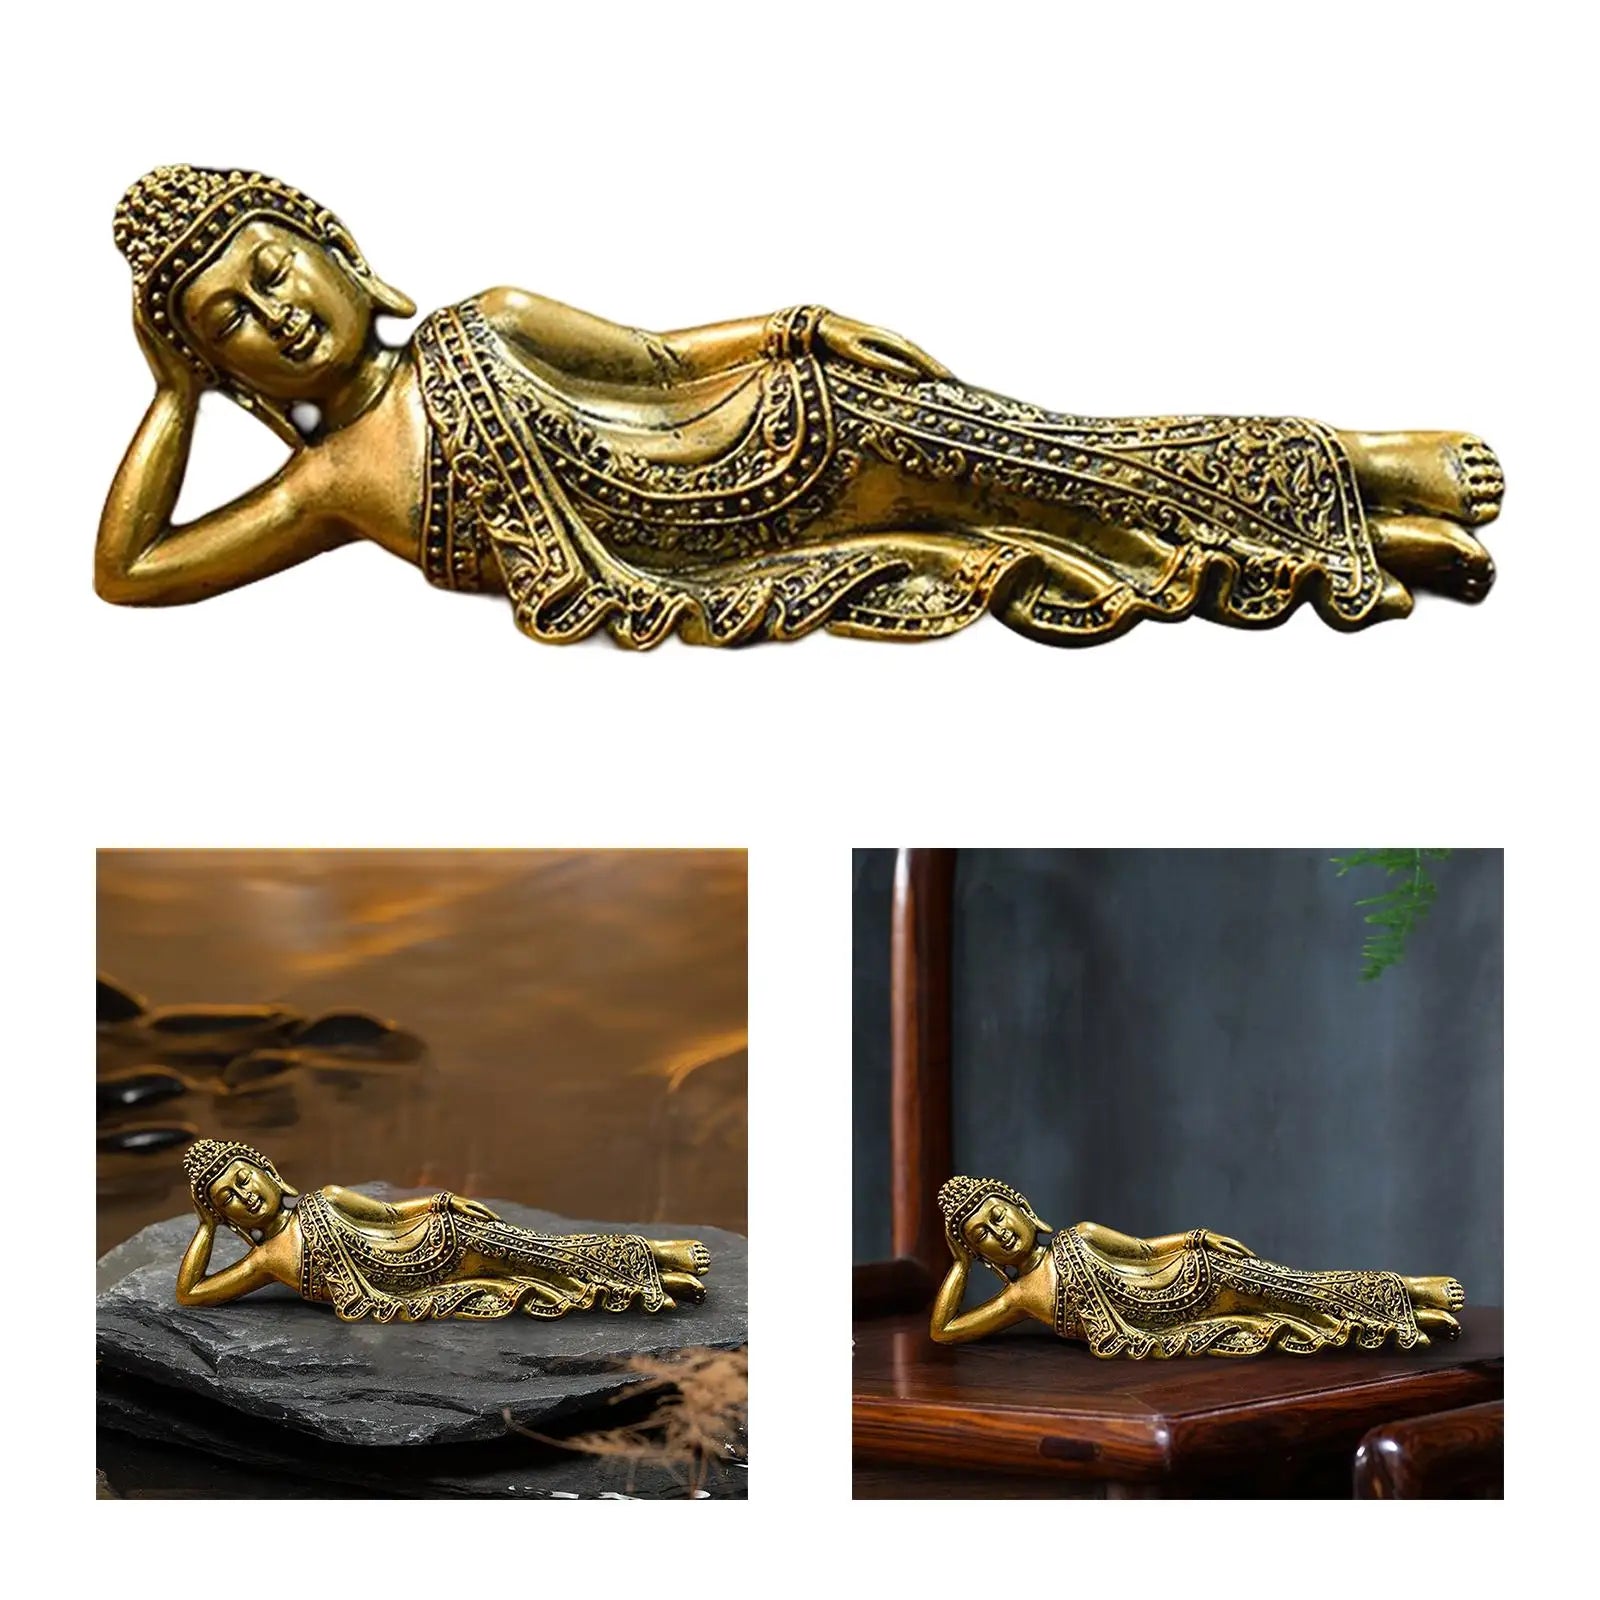 Estatua de Buda reclinado en resina.